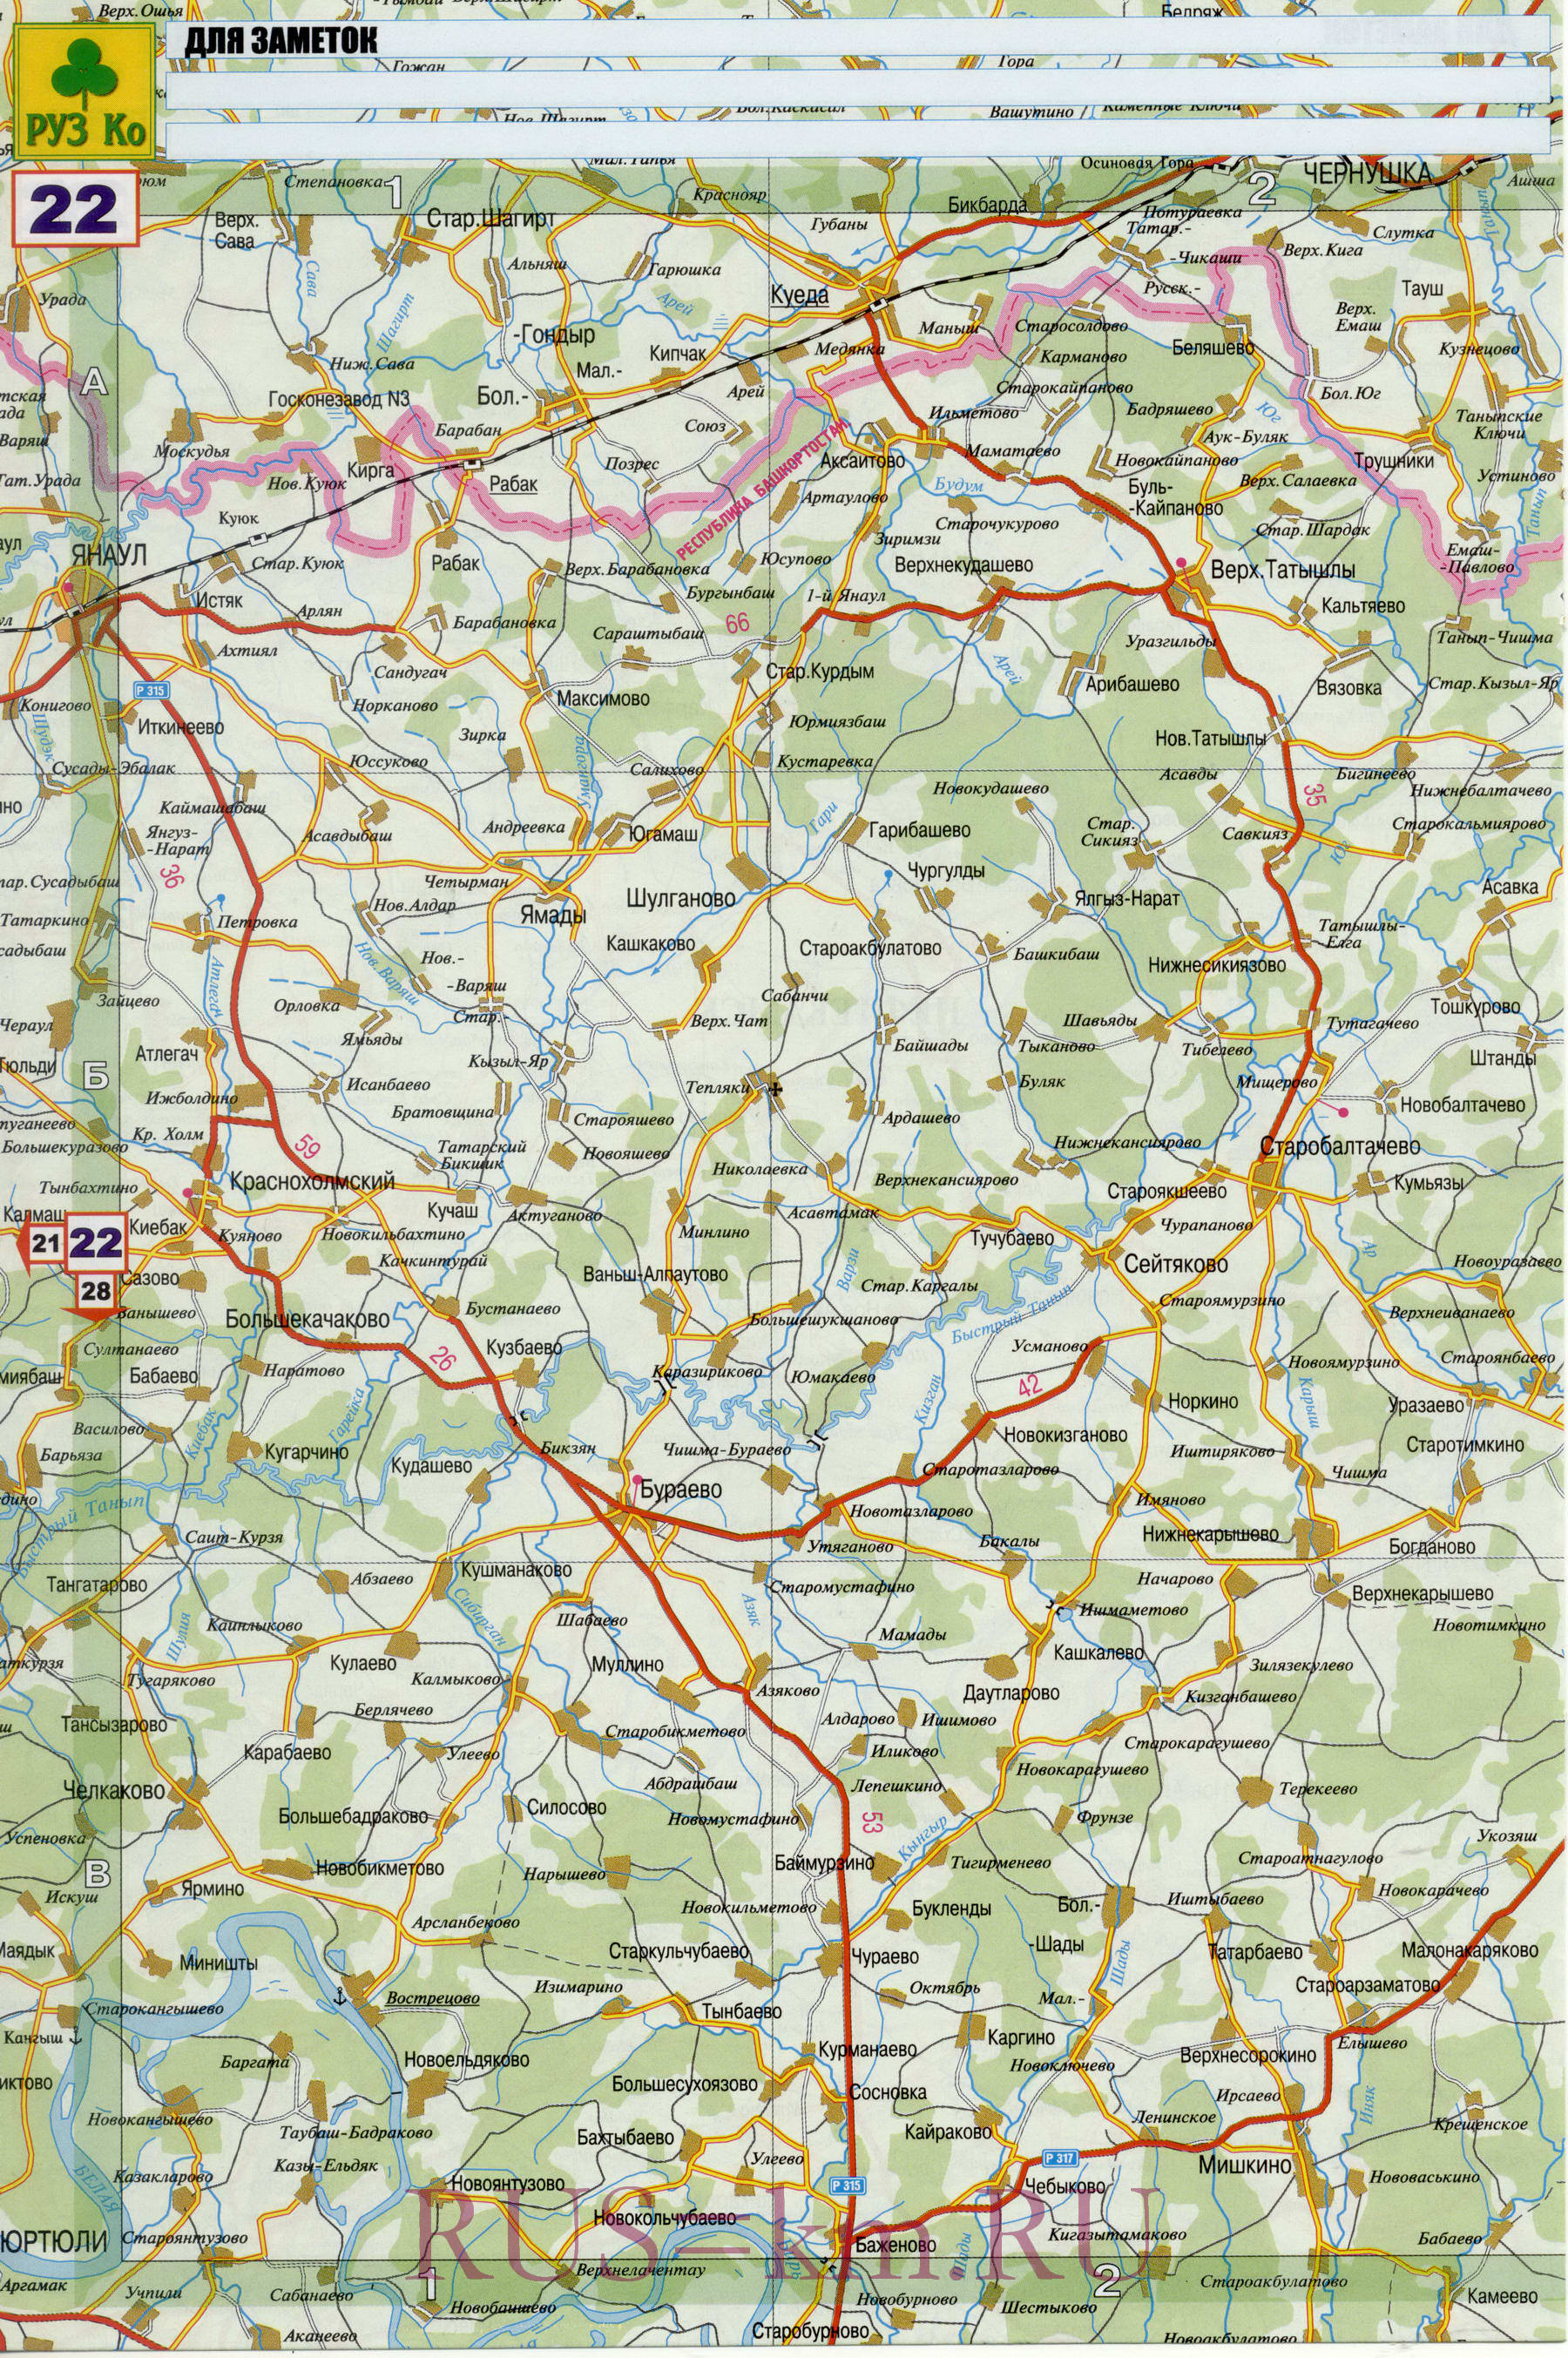 Карта дорог Янаула. Детальная карта дорог города Янаул и окрестностей, B0 - 